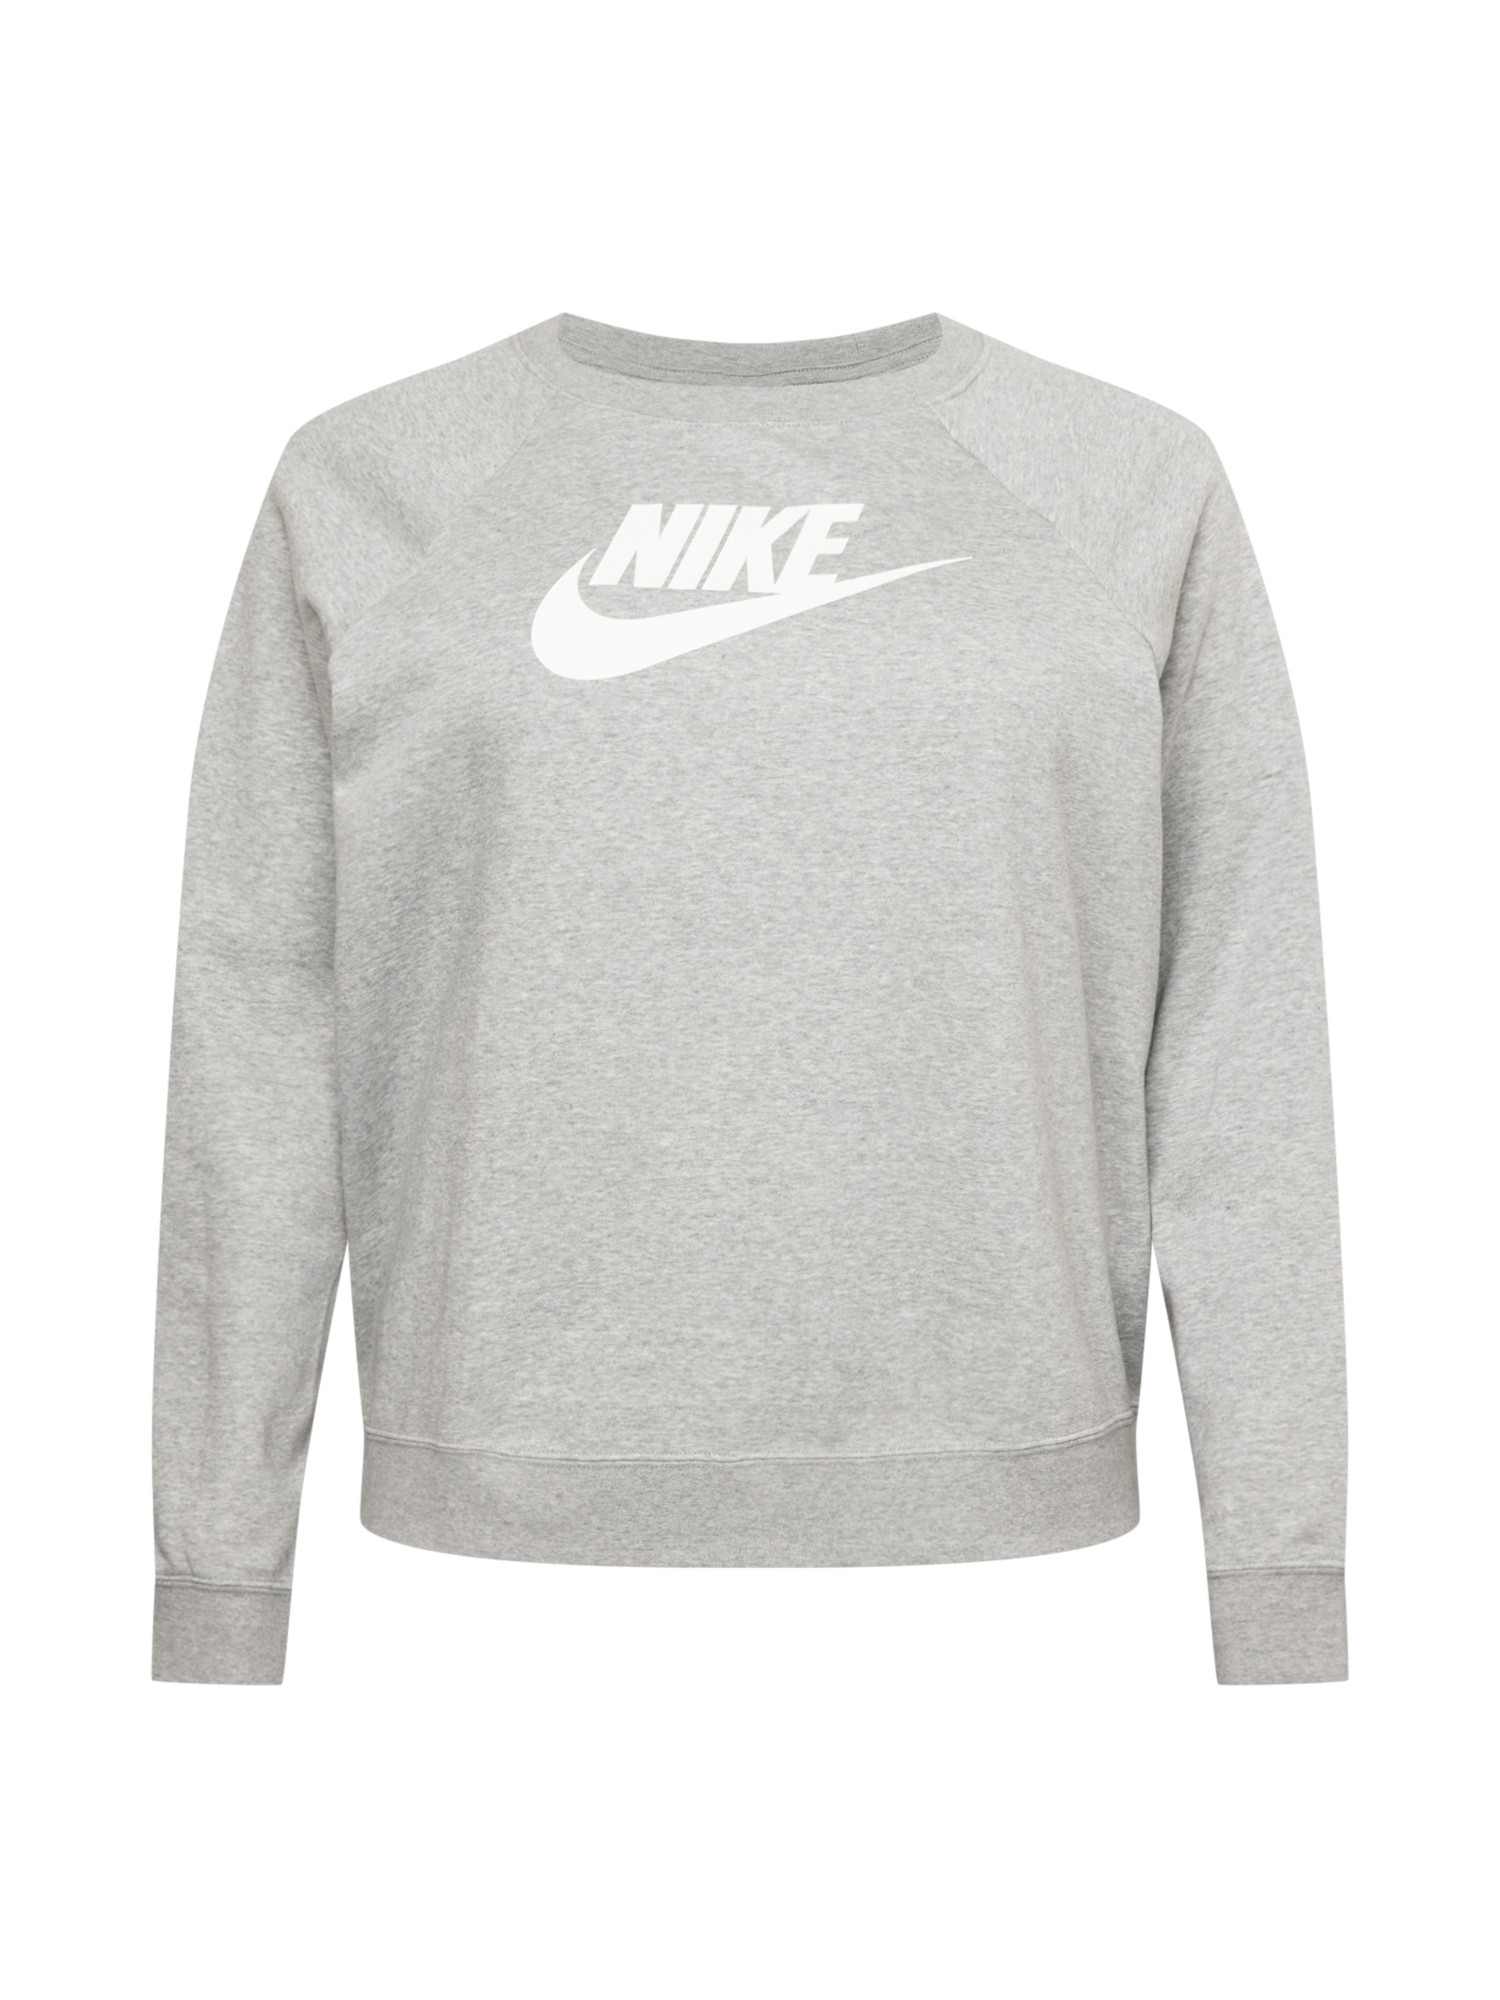 Nike Sportswear Sweatshirt in Graumeliert 